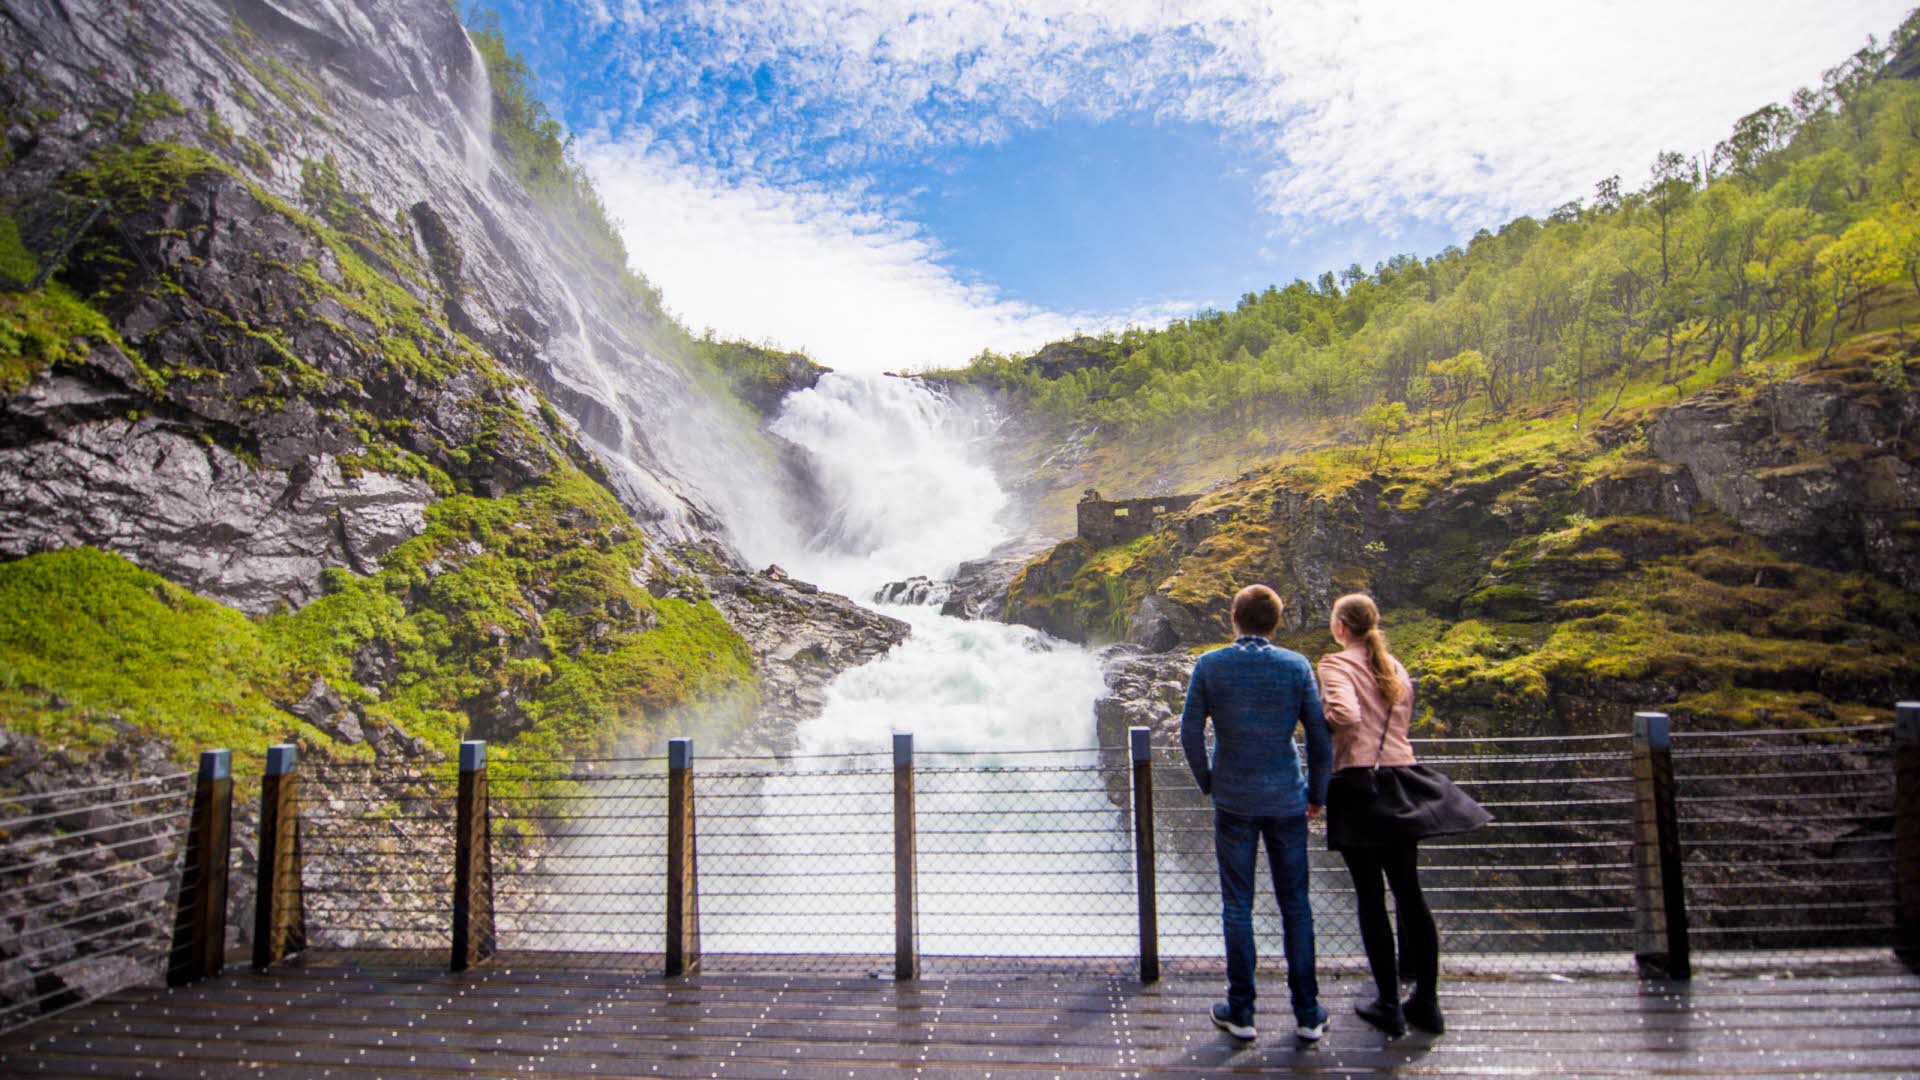 The waterfall at Kjosfossen